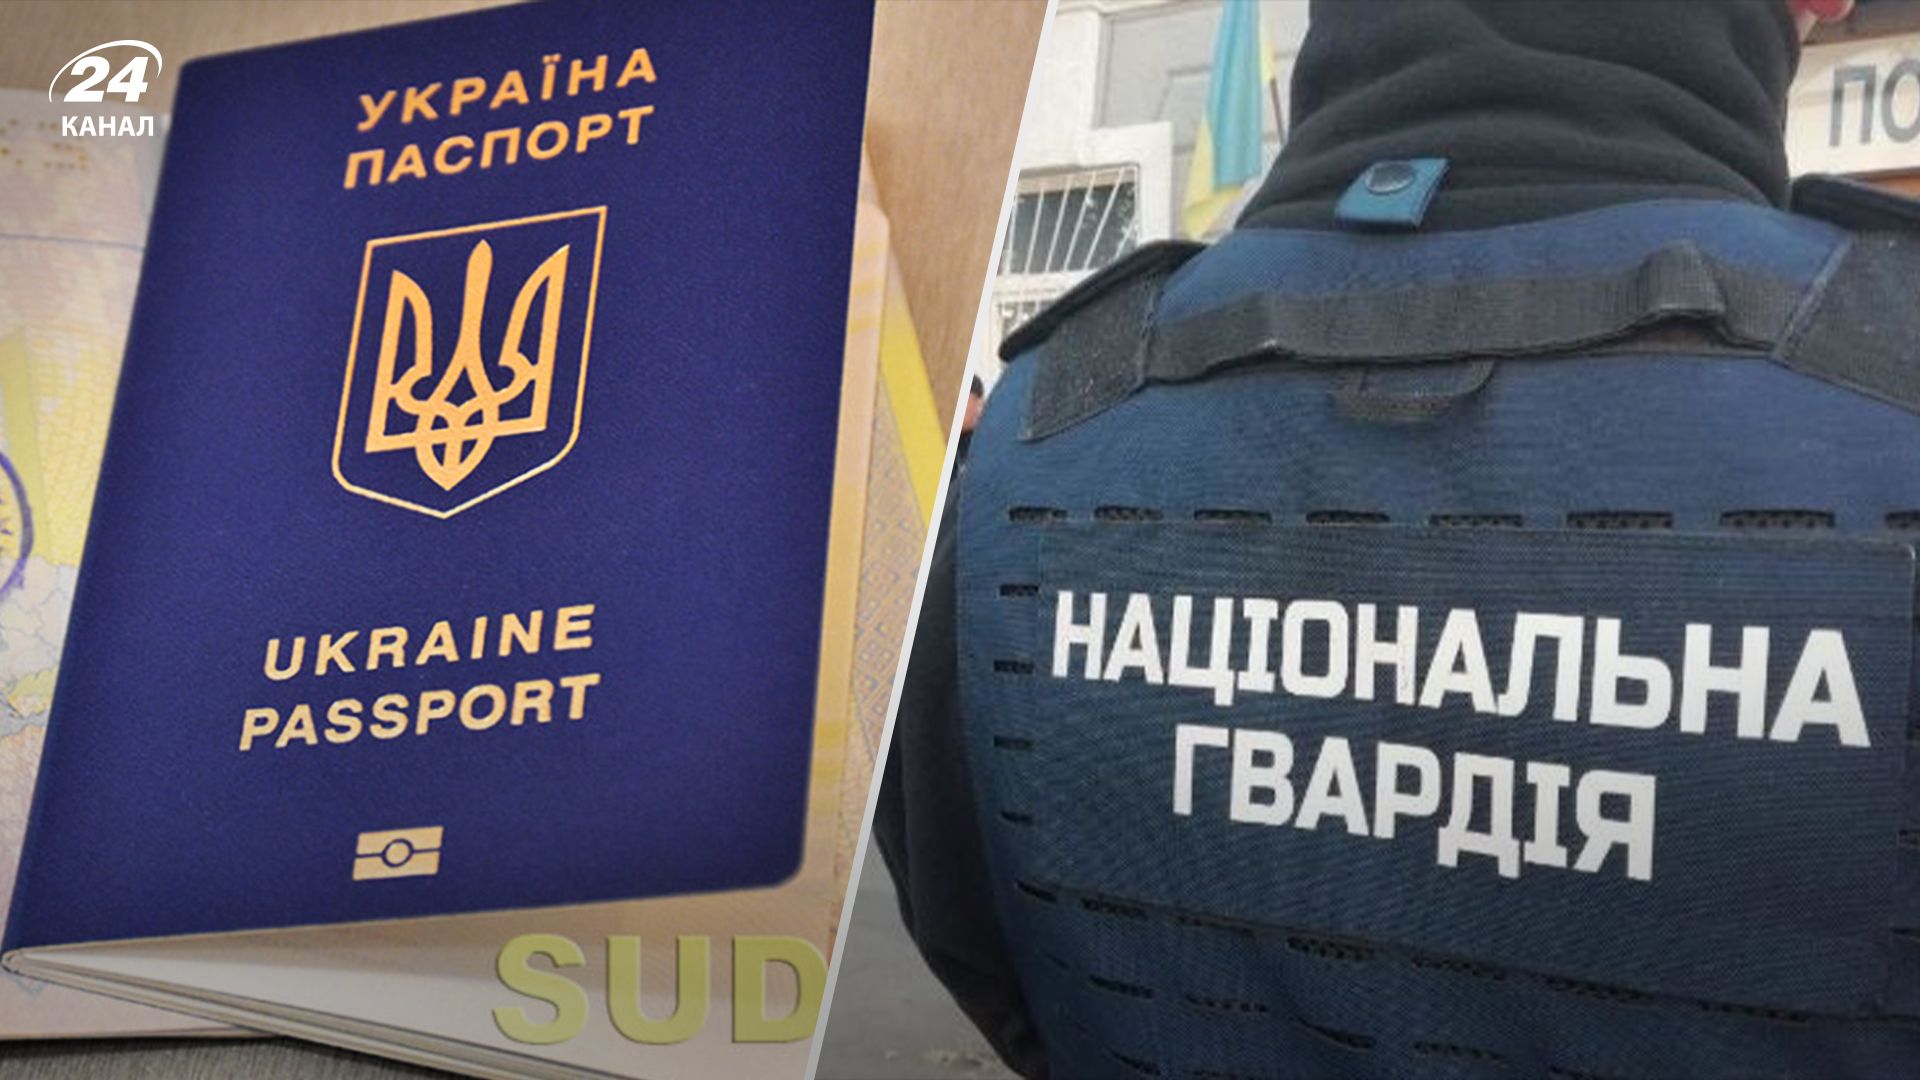 Иностранцы, служащие в Нацгвардии, смогут получить гражданство Украины в упрощенном порядке - 24 Канал